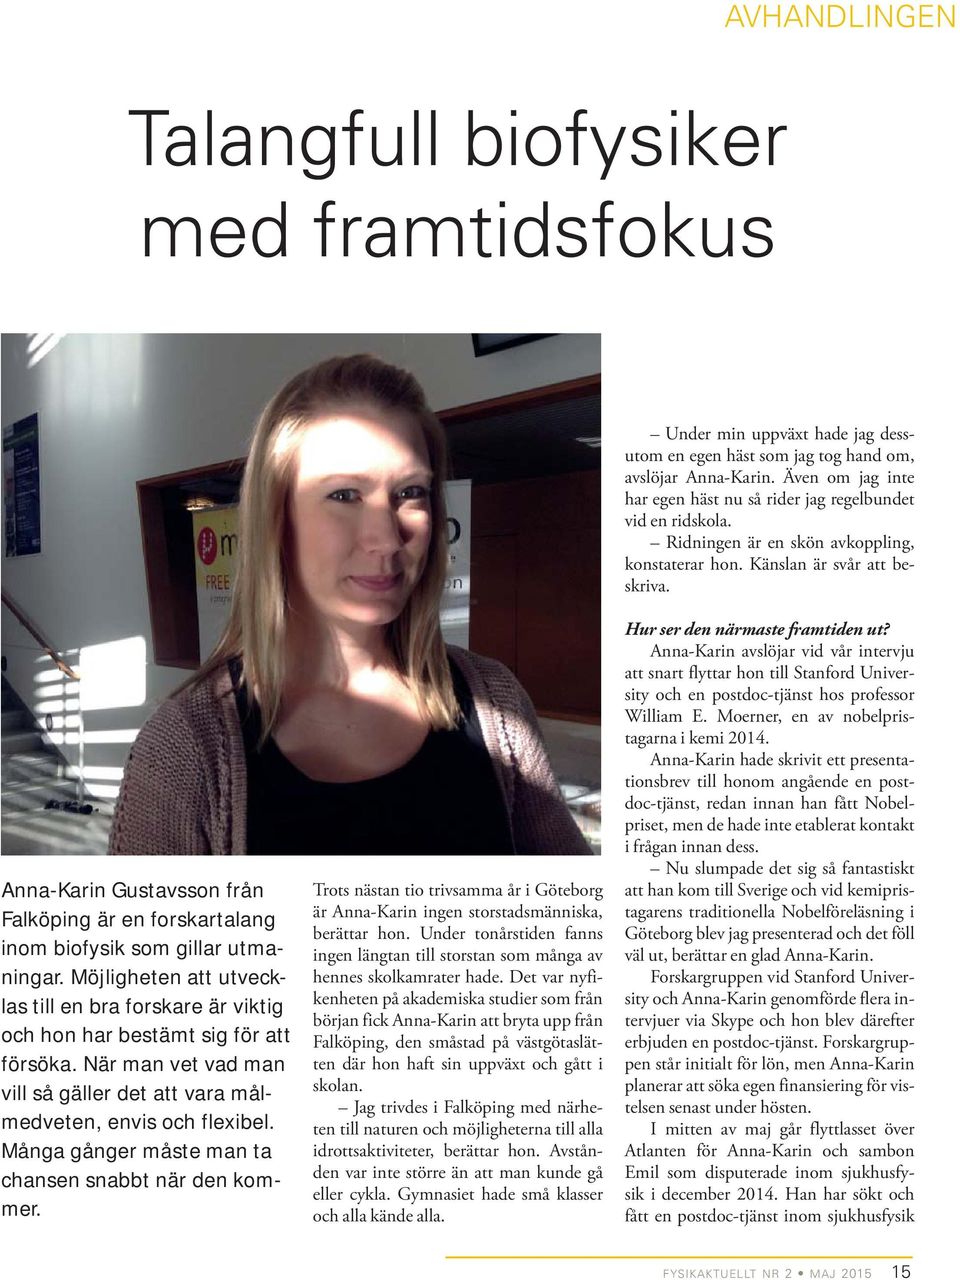 Anna-Karin Gustavsson från Falköping är en forskartalang inom biofysik som gillar utmaningar. Möjligheten att utvecklas till en bra forskare är viktig och hon har bestämt sig för att försöka.